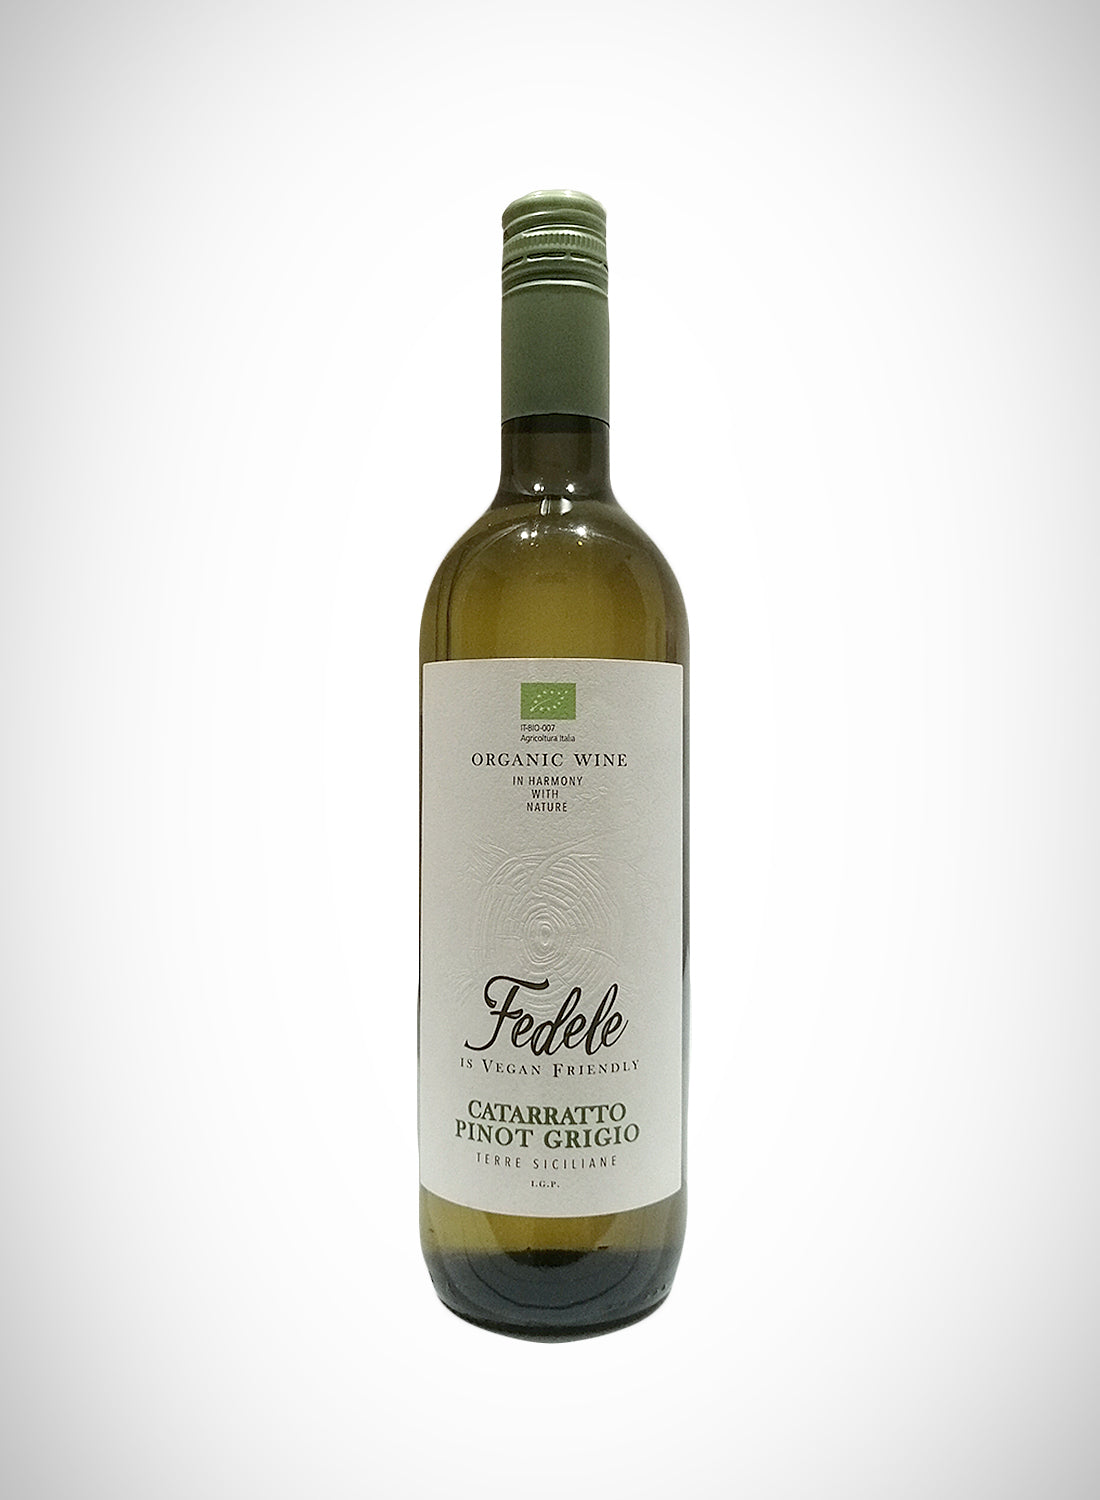 Fedele Cataratto/Pinot Grigio (organic)